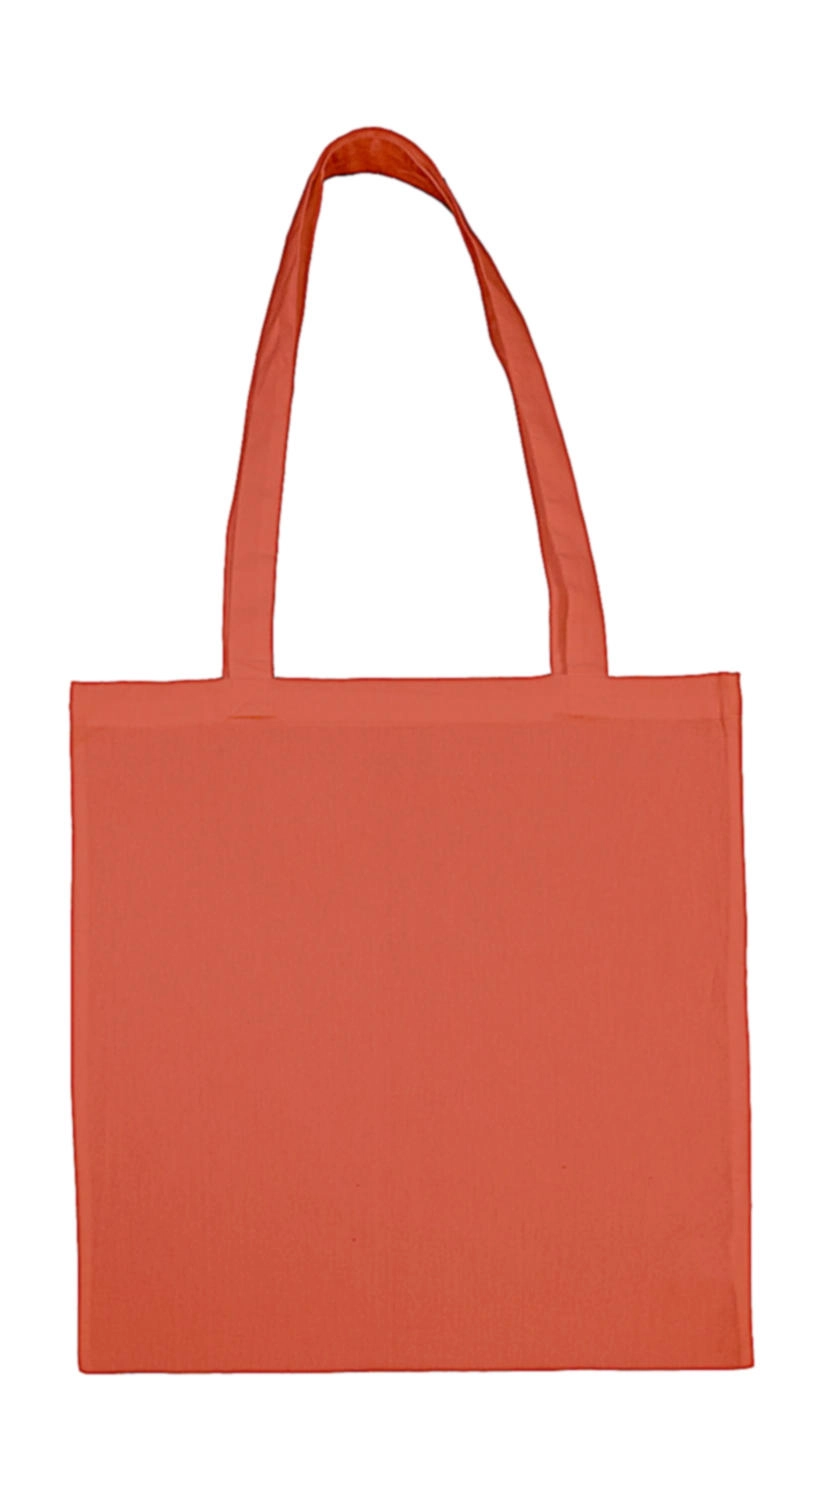 Cotton Bag LH zum Besticken und Bedrucken in der Farbe Apricot Brandy mit Ihren Logo, Schriftzug oder Motiv.